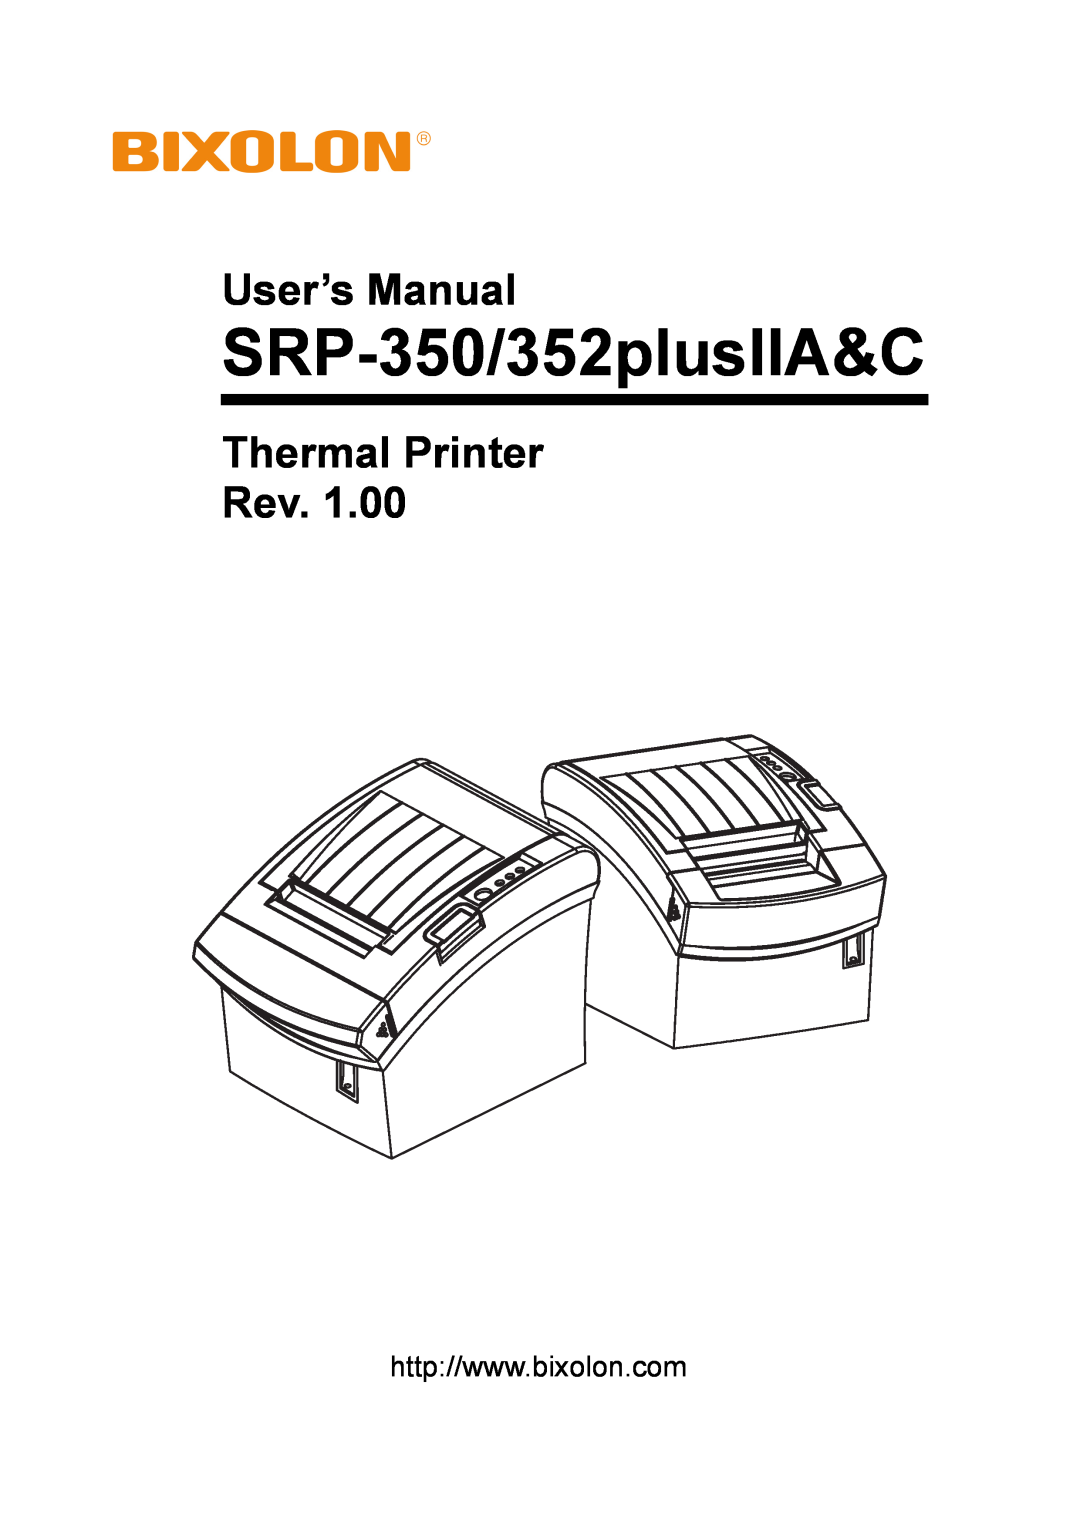 BIXOLON SRP-352 user manual SRP-350/352plusIIA&C, User’s Manual, Thermal Printer Rev 